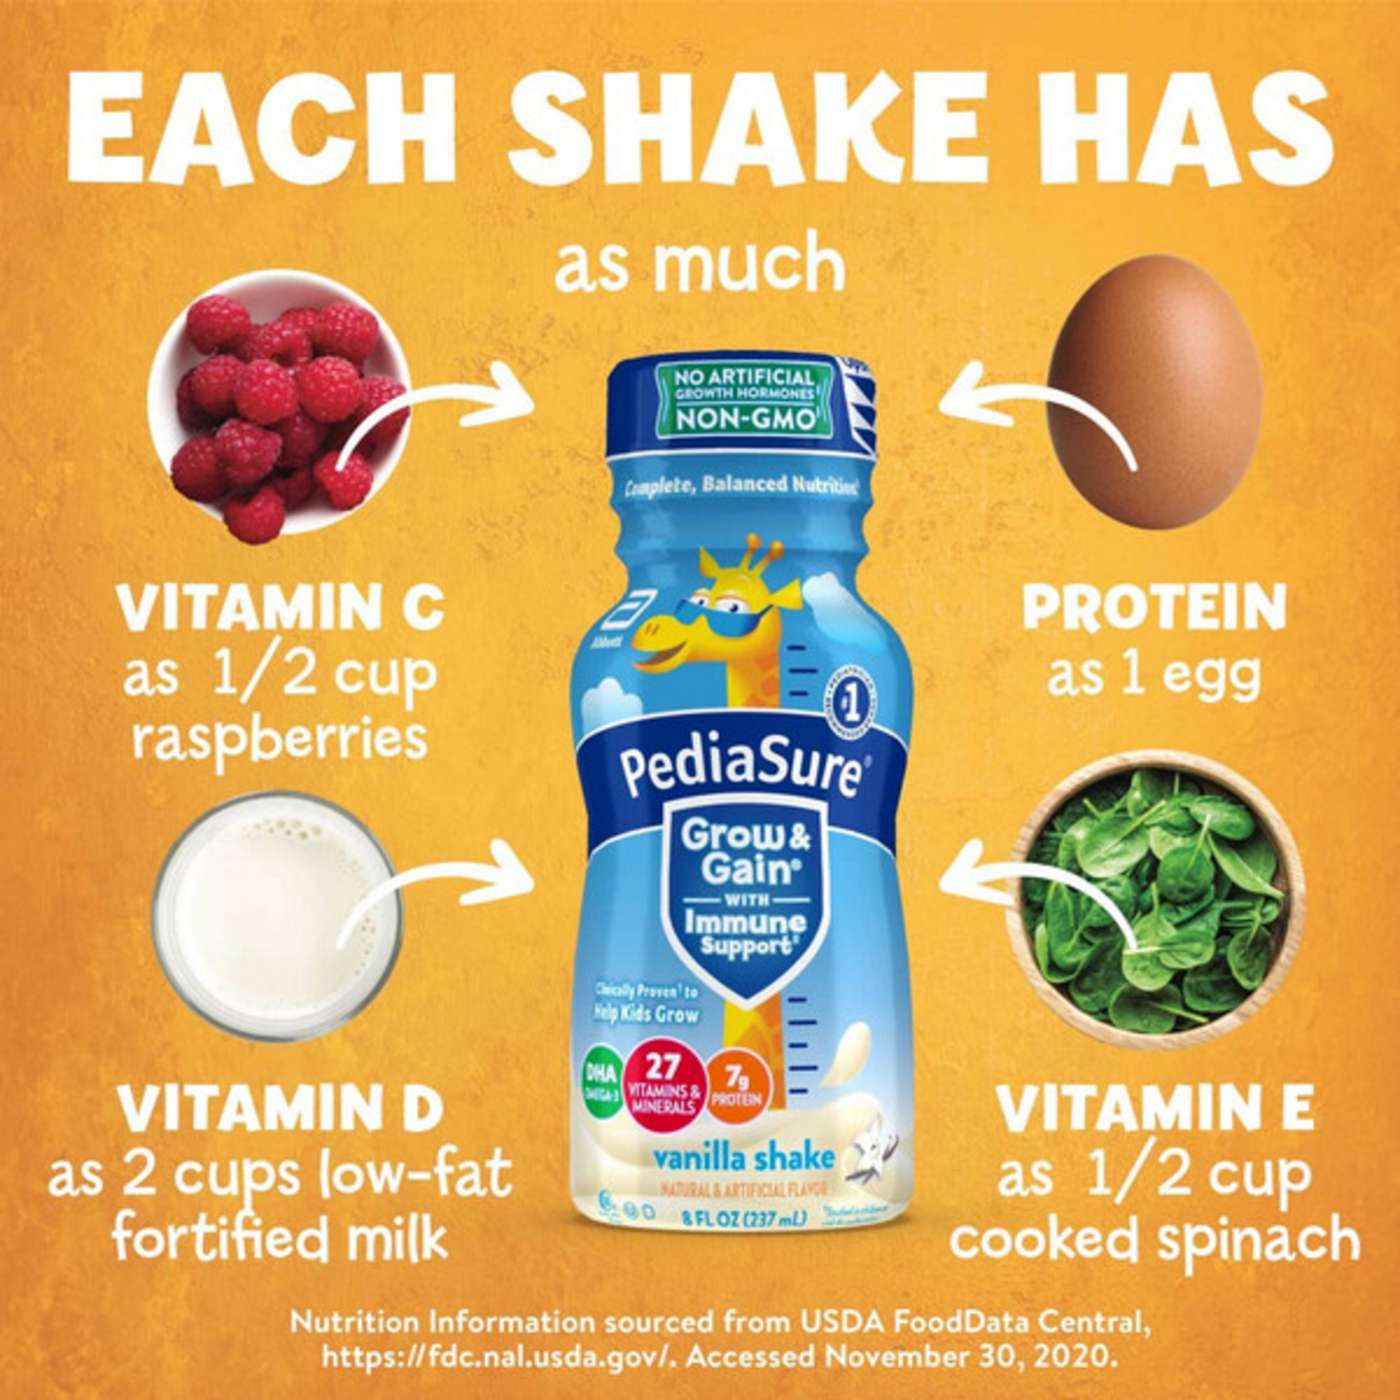 PediaSure Grow & Gain with Immune Support Shake - Vanilla; image 9 of 9